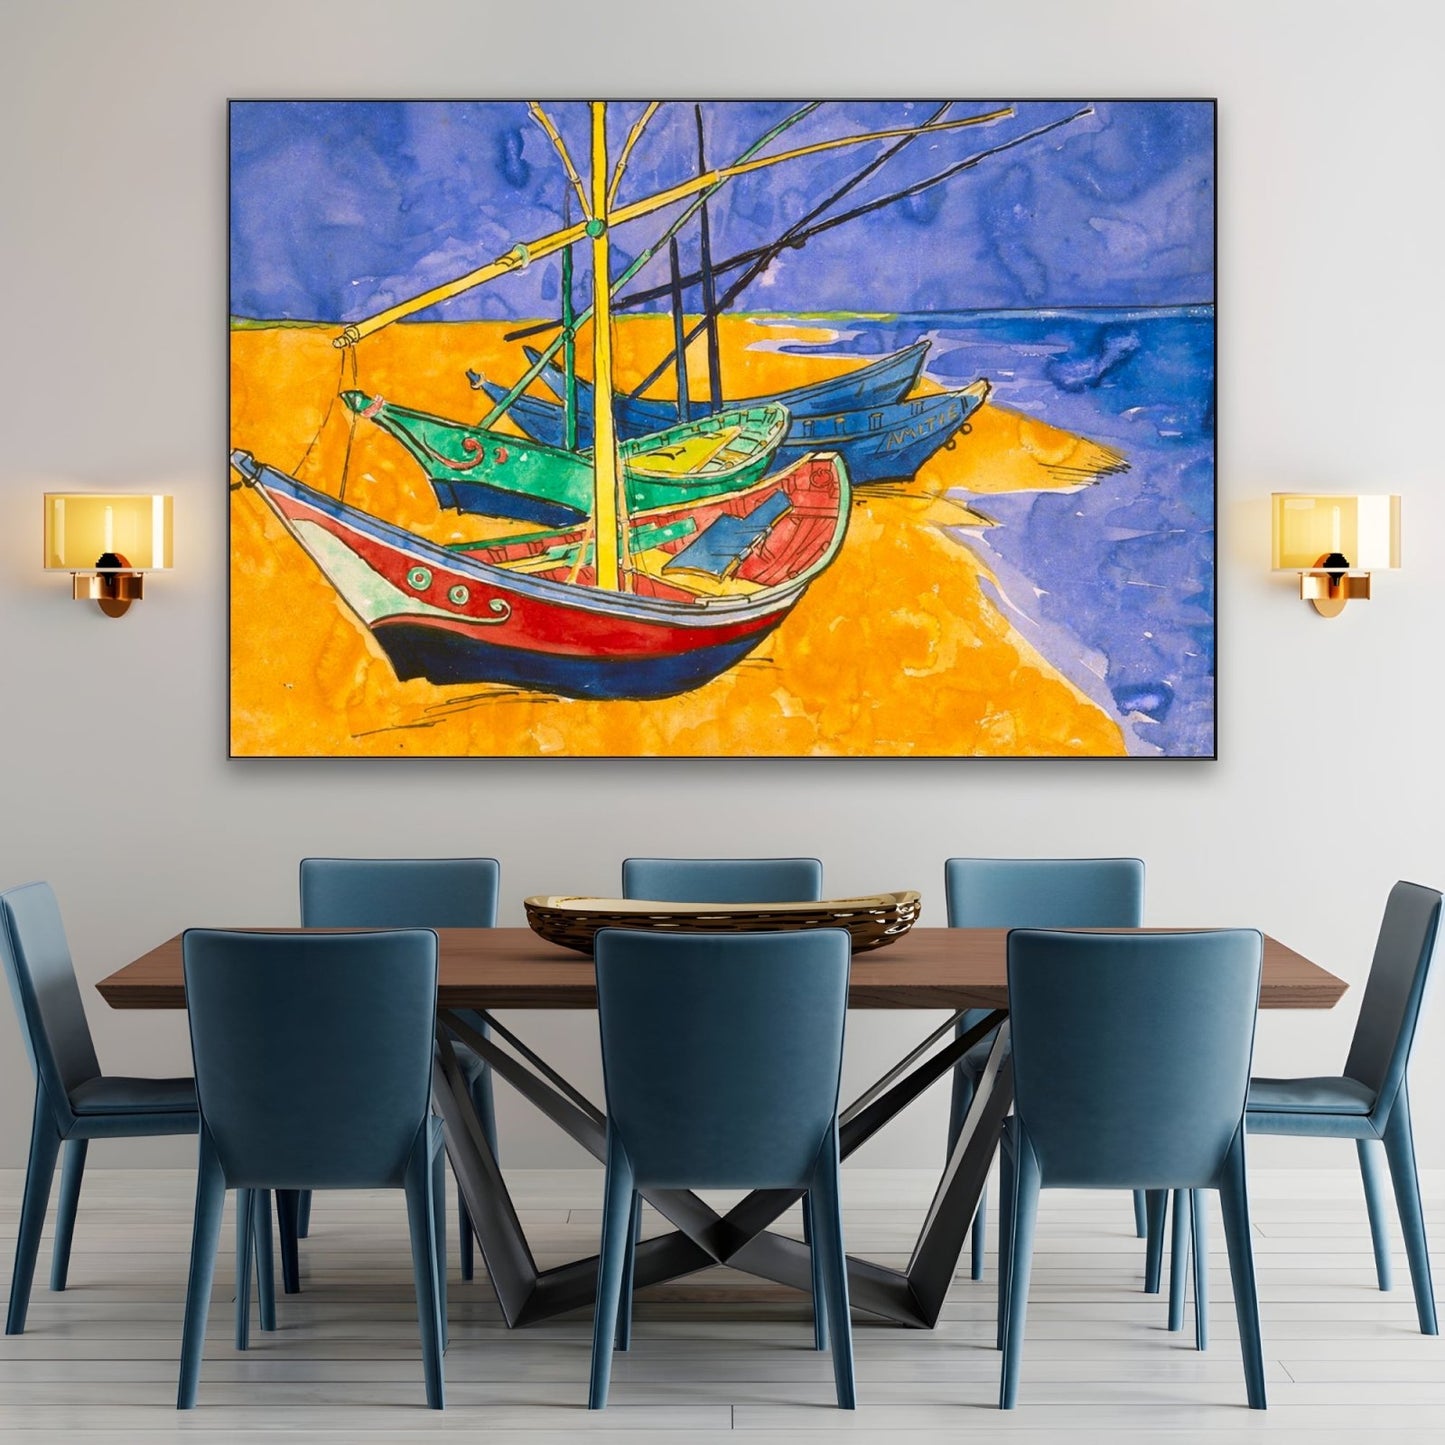 Vissersboten op het strand I, Vincent van Gogh